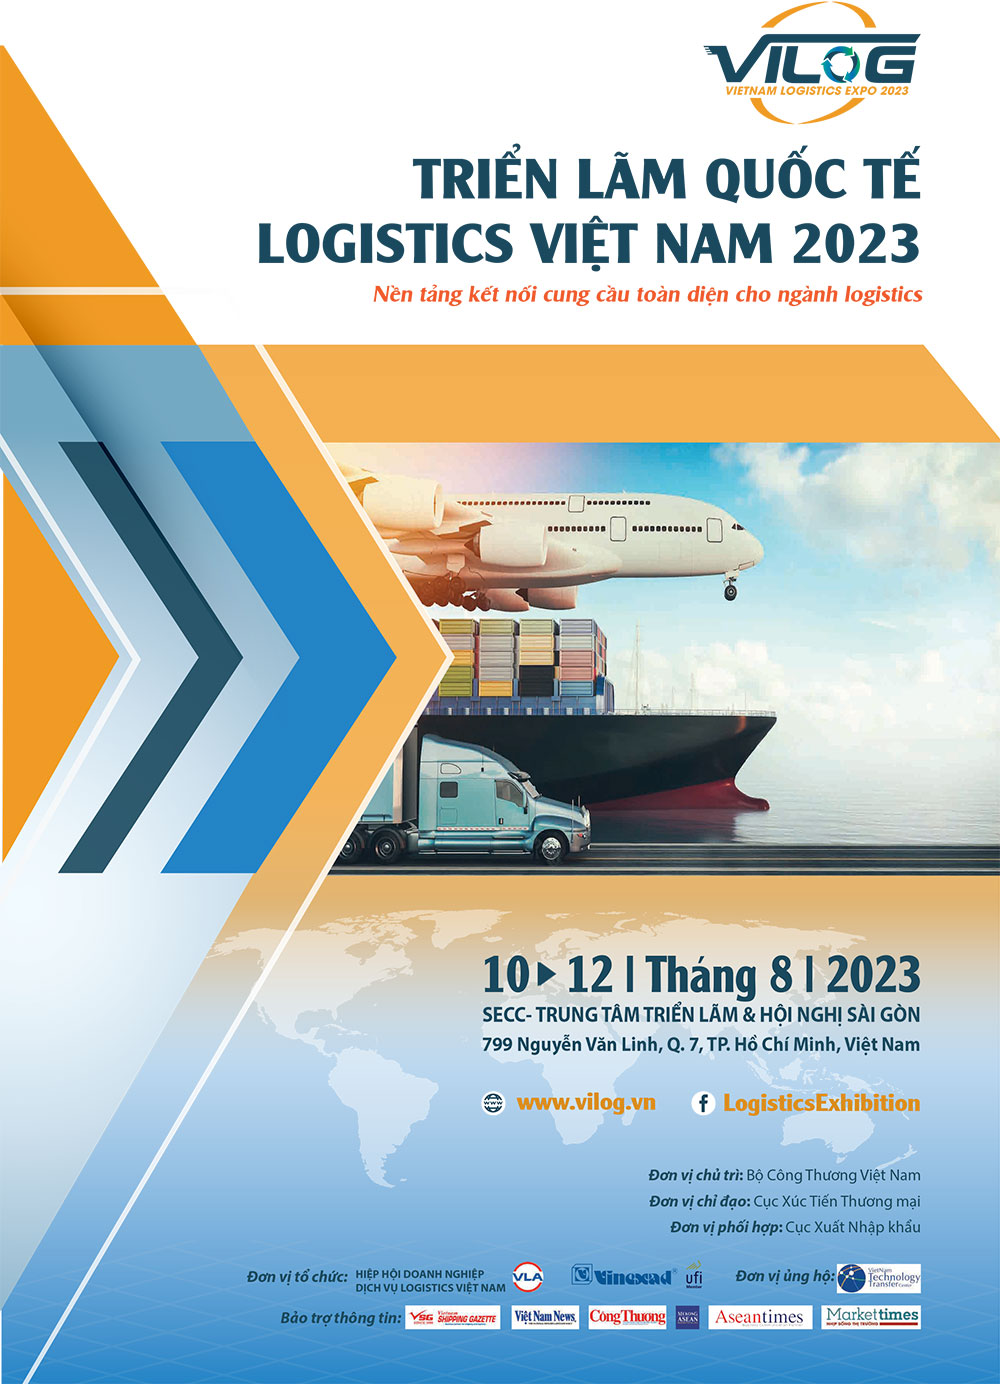 VILOG VIETNAM LOGISTICS EXPO 2023 - Triển Lãm Quốc Tế Logistics Việt Nam 2023